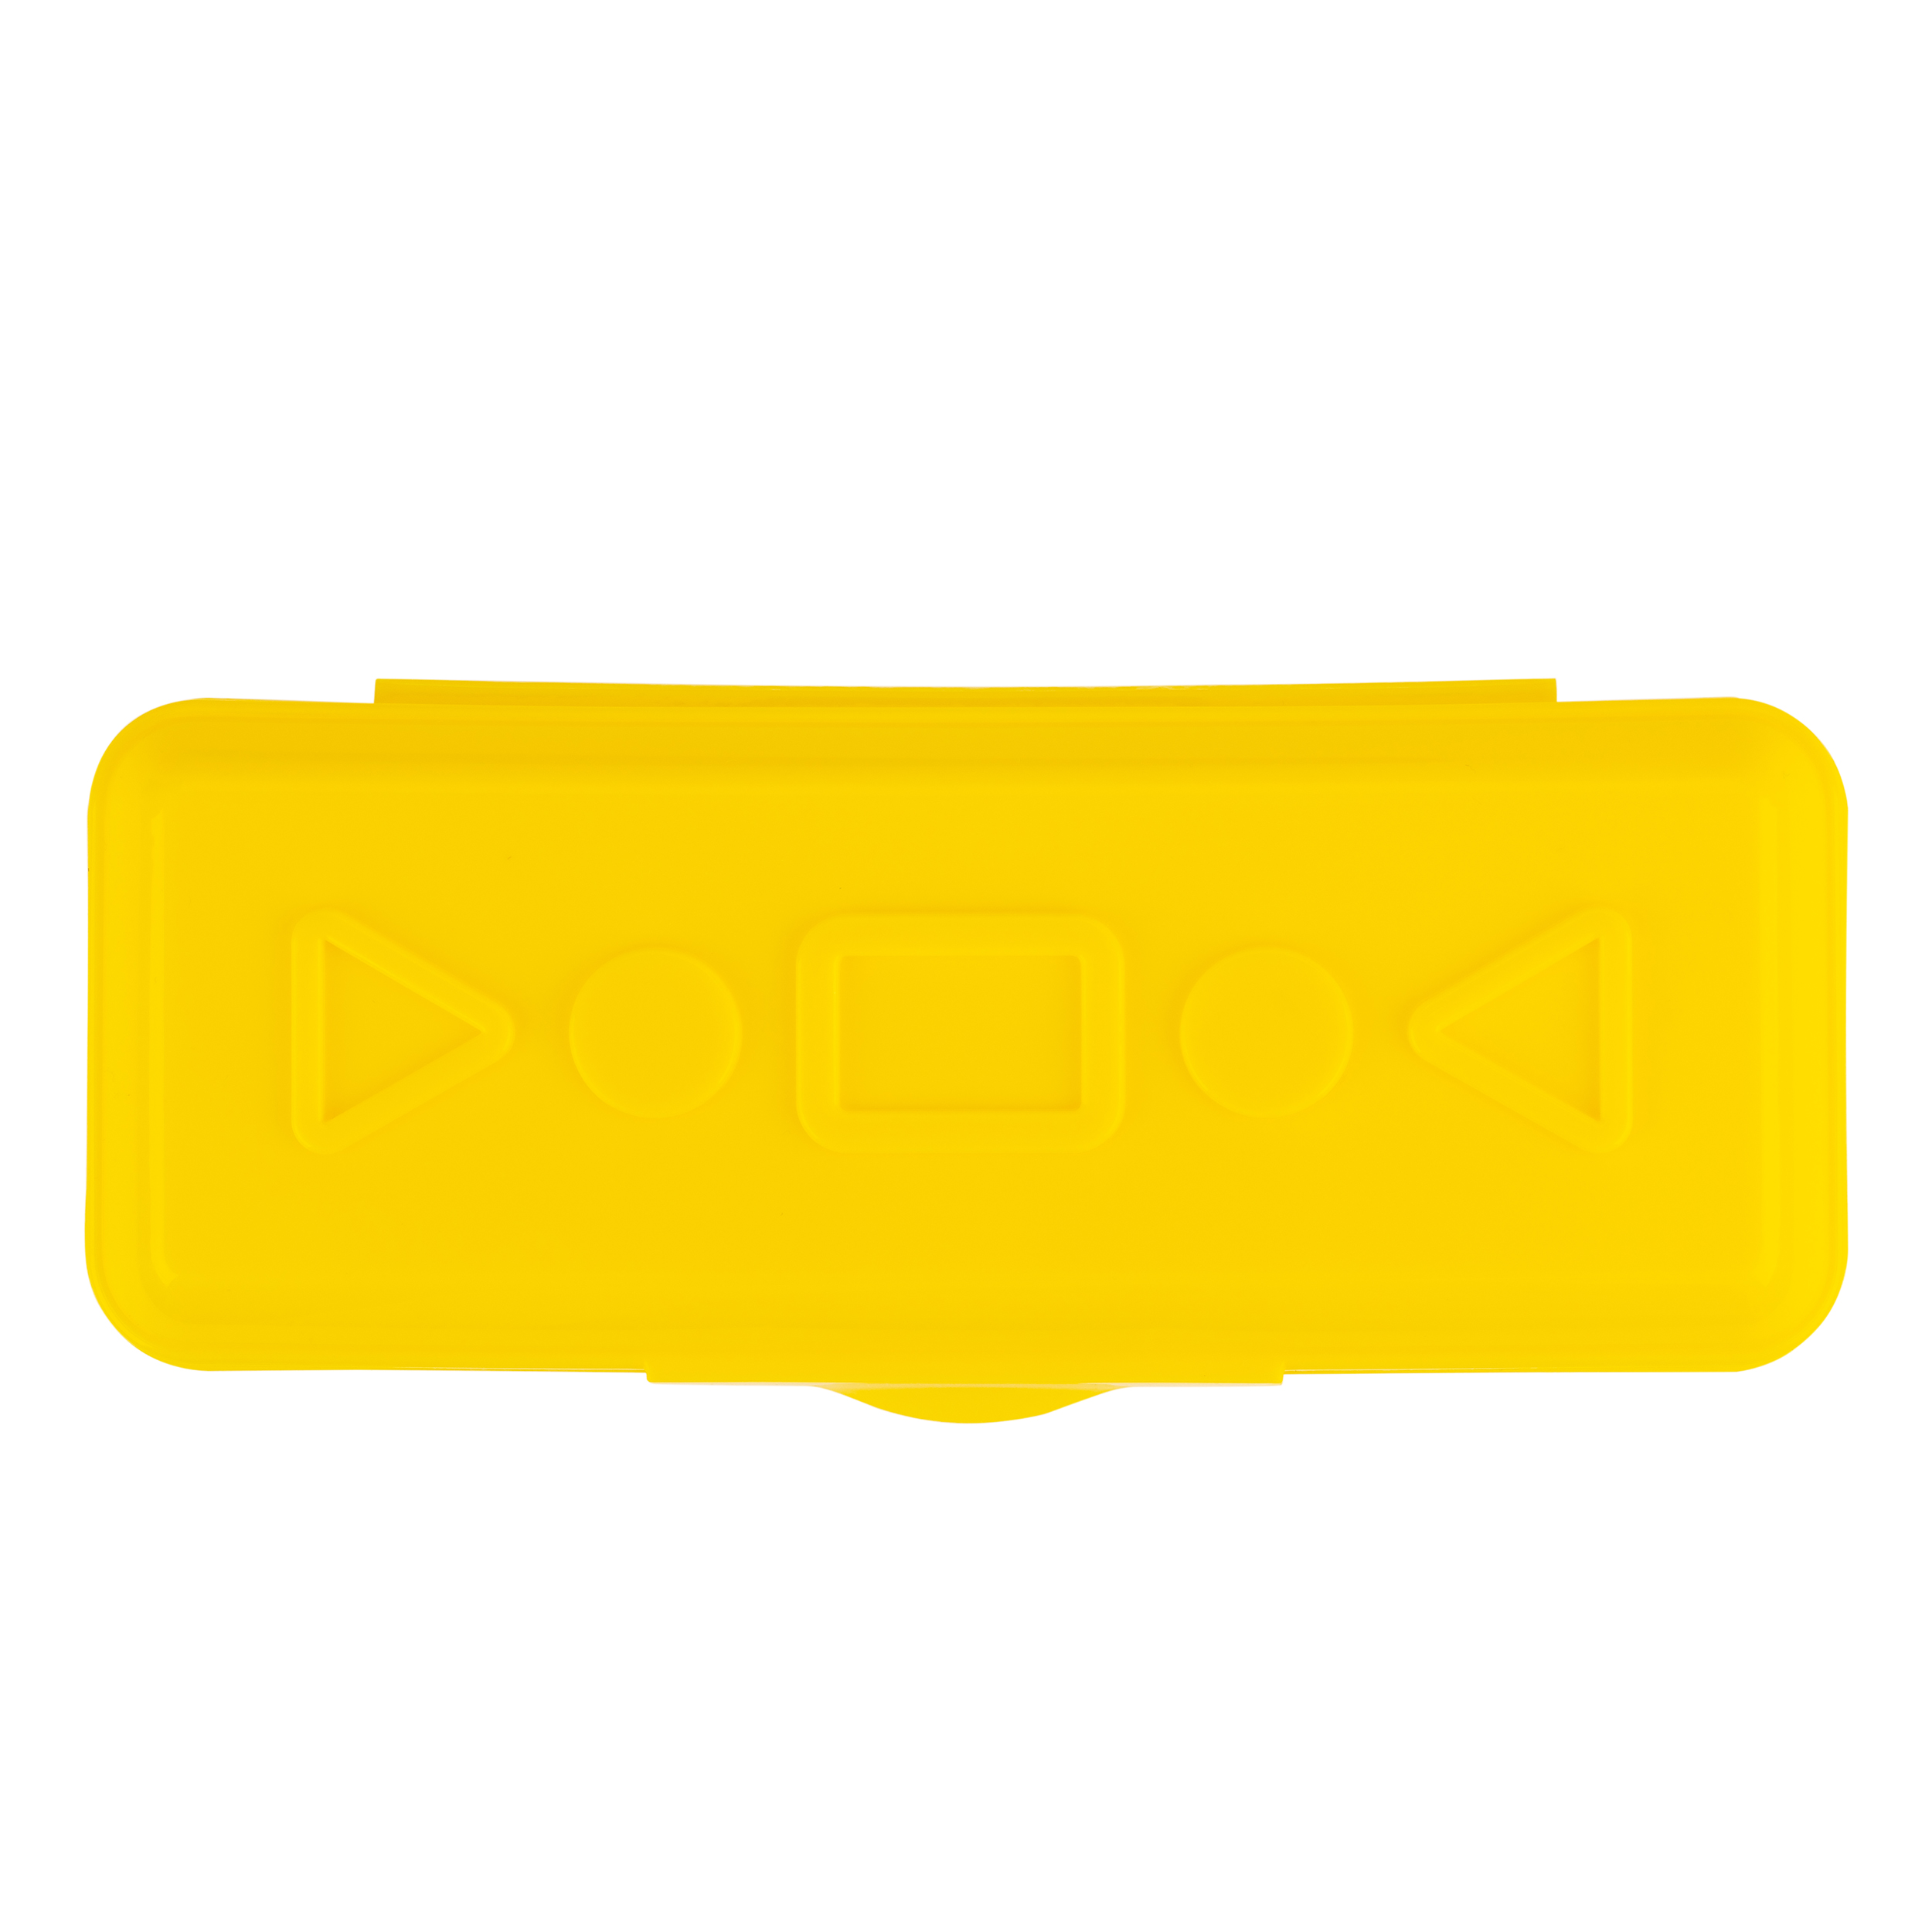 Пенал пластиковый ЦВЕТИК желтый по 91.00 руб от Невская палитра